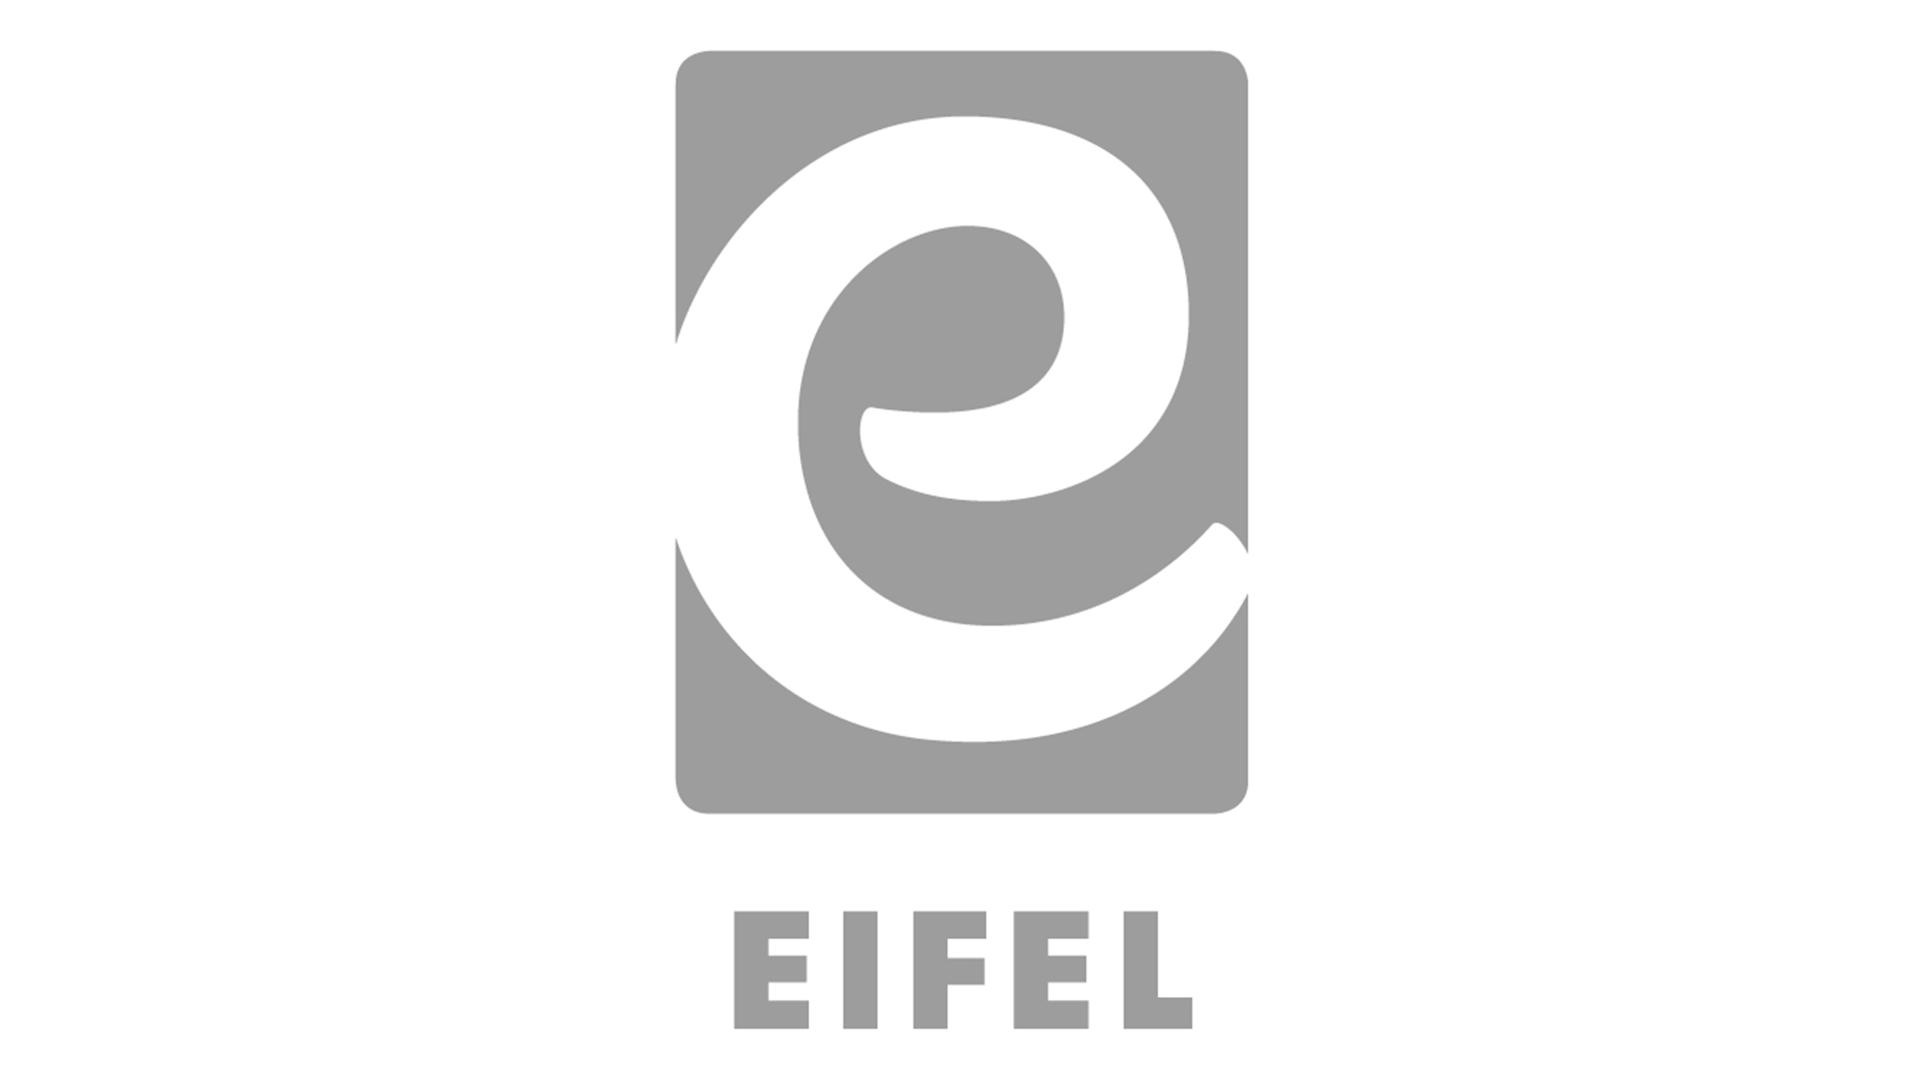 Eifel Tourismus: Der zentrale Ansprechpartner für die Urlaubsregion Eifel